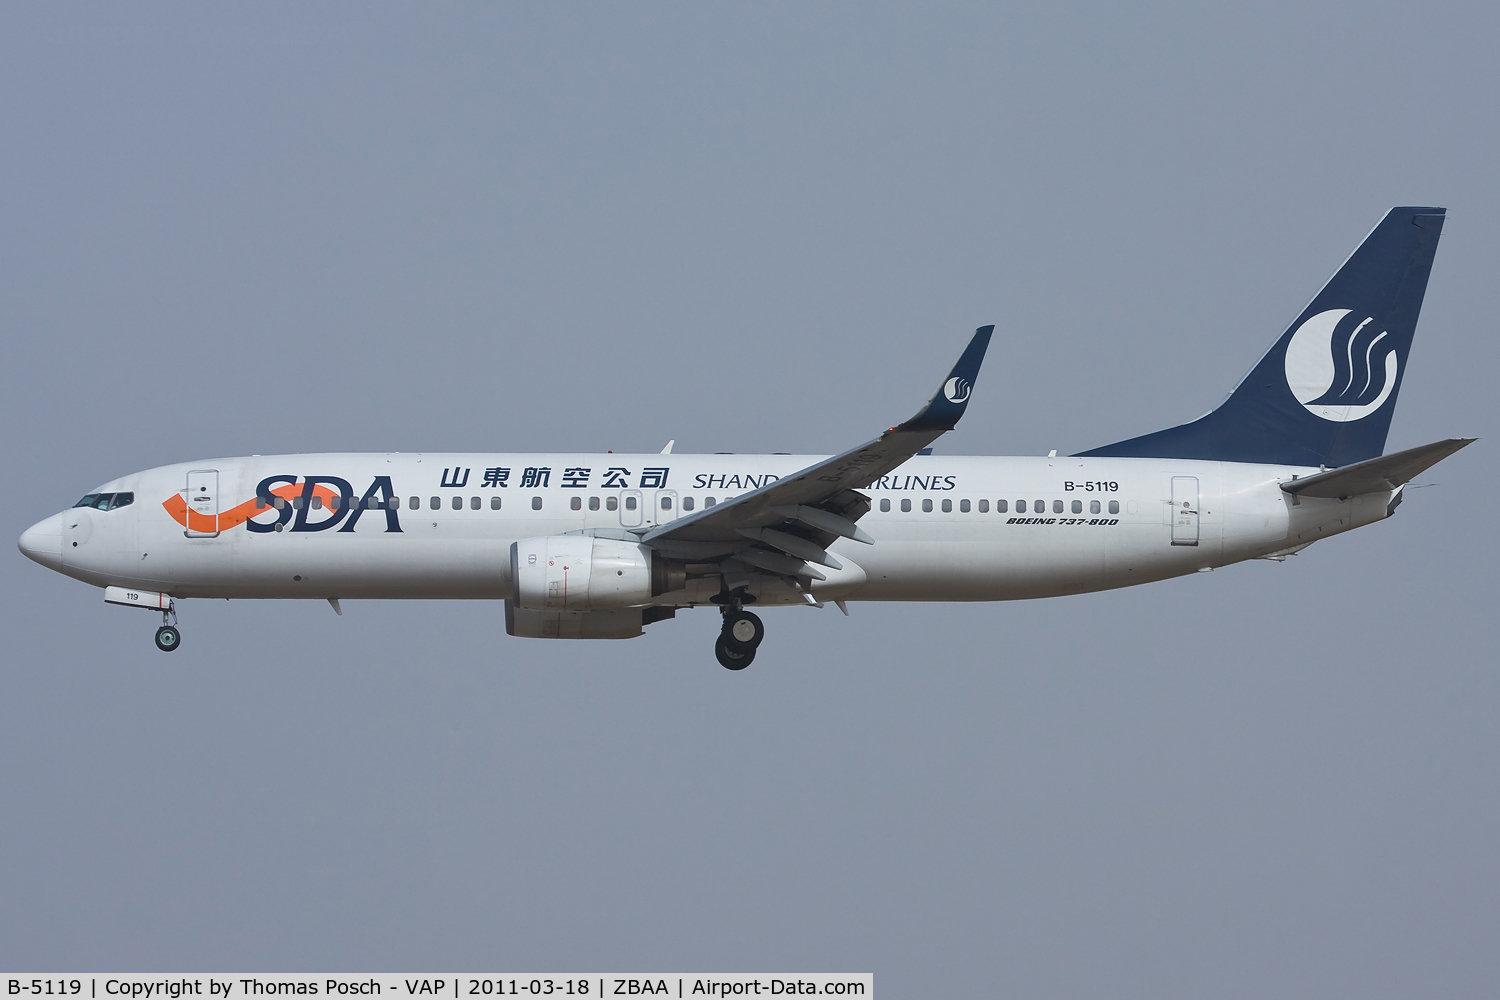 B-5119, 2005 Boeing 737-85N C/N 33665, Shandong Airlines